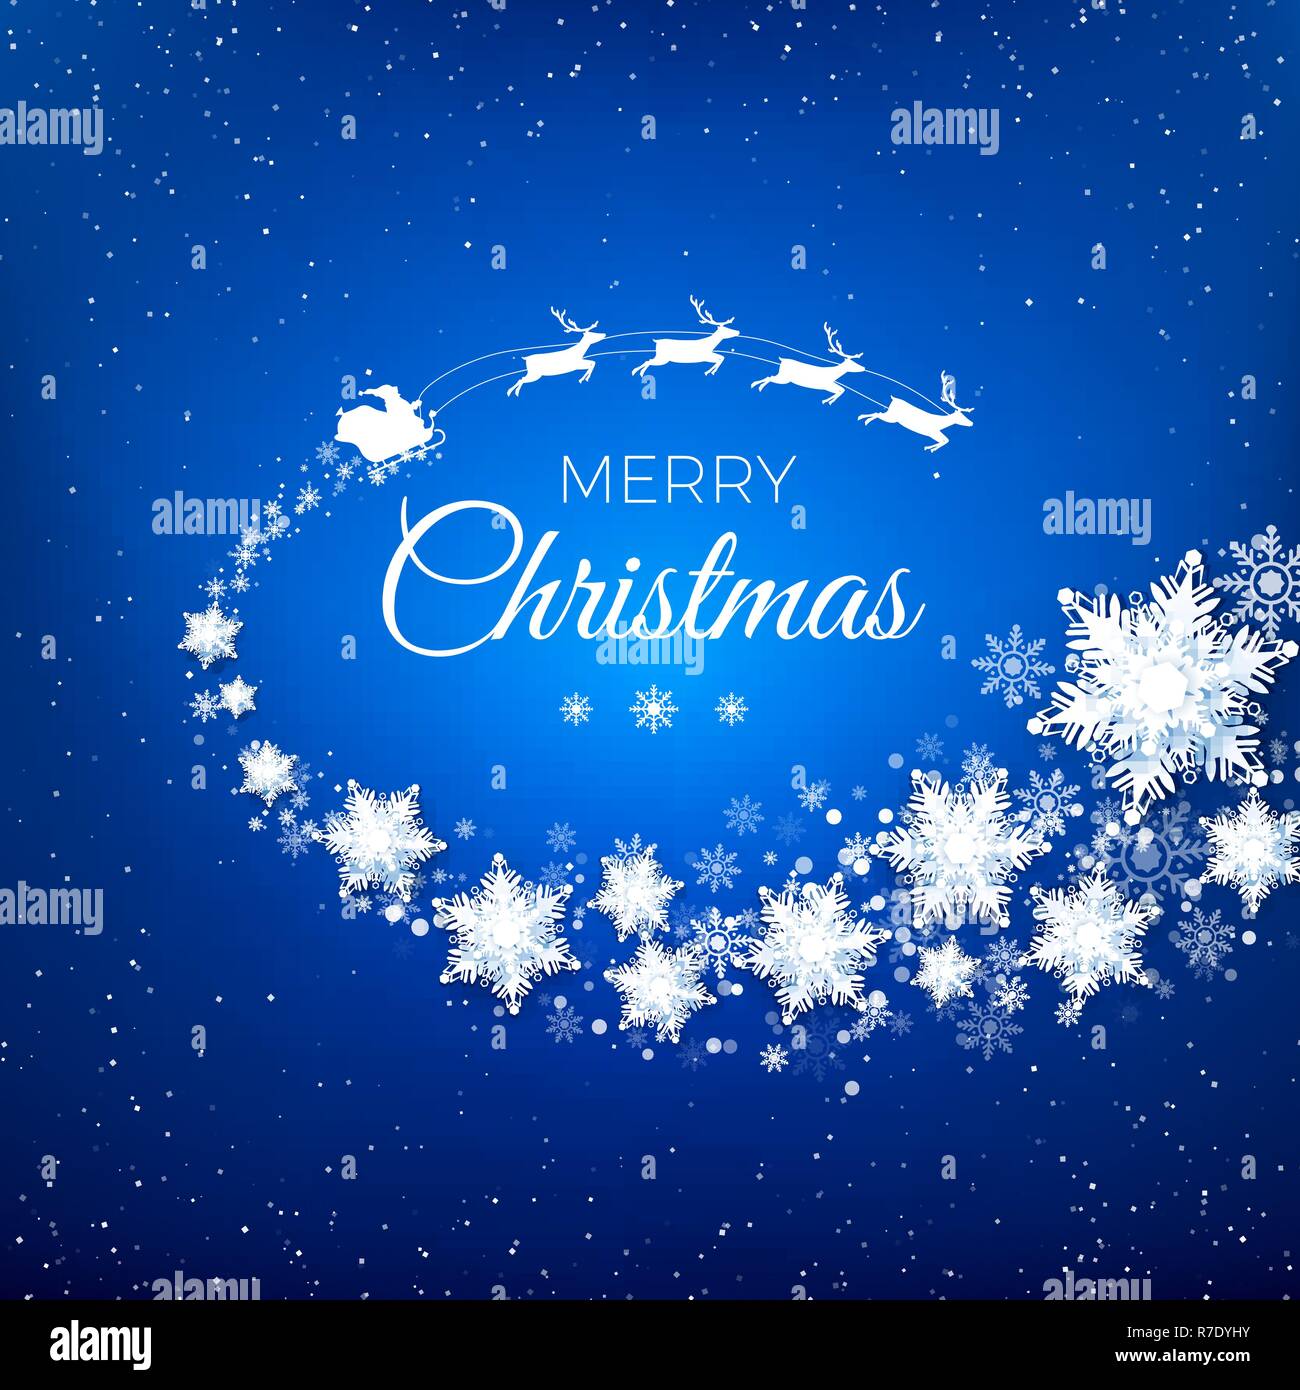 Weiße Silhouette der fliegende Weihnachtsmann mit Rentier Schlitten dekoriert von snowflekes Trail und Begrüßungstext. Auf blauem Hintergrund Schneefall. Vektor illus Stock Vektor